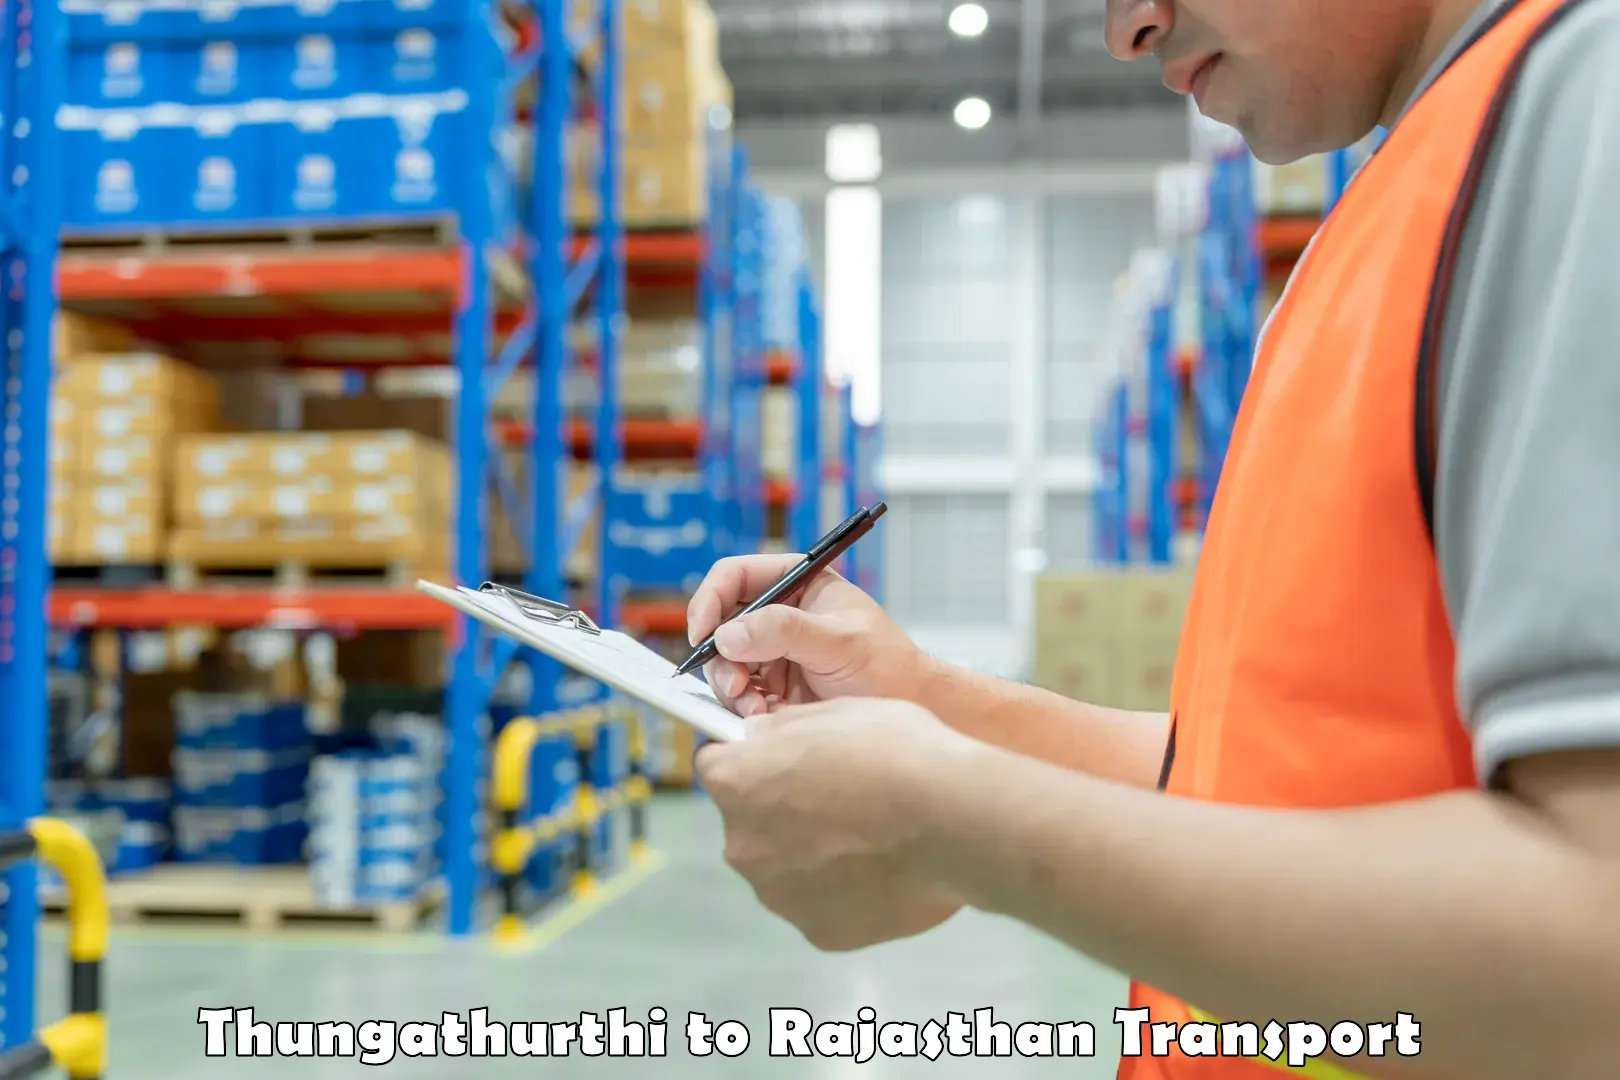 Transport in sharing Thungathurthi to Taranagar